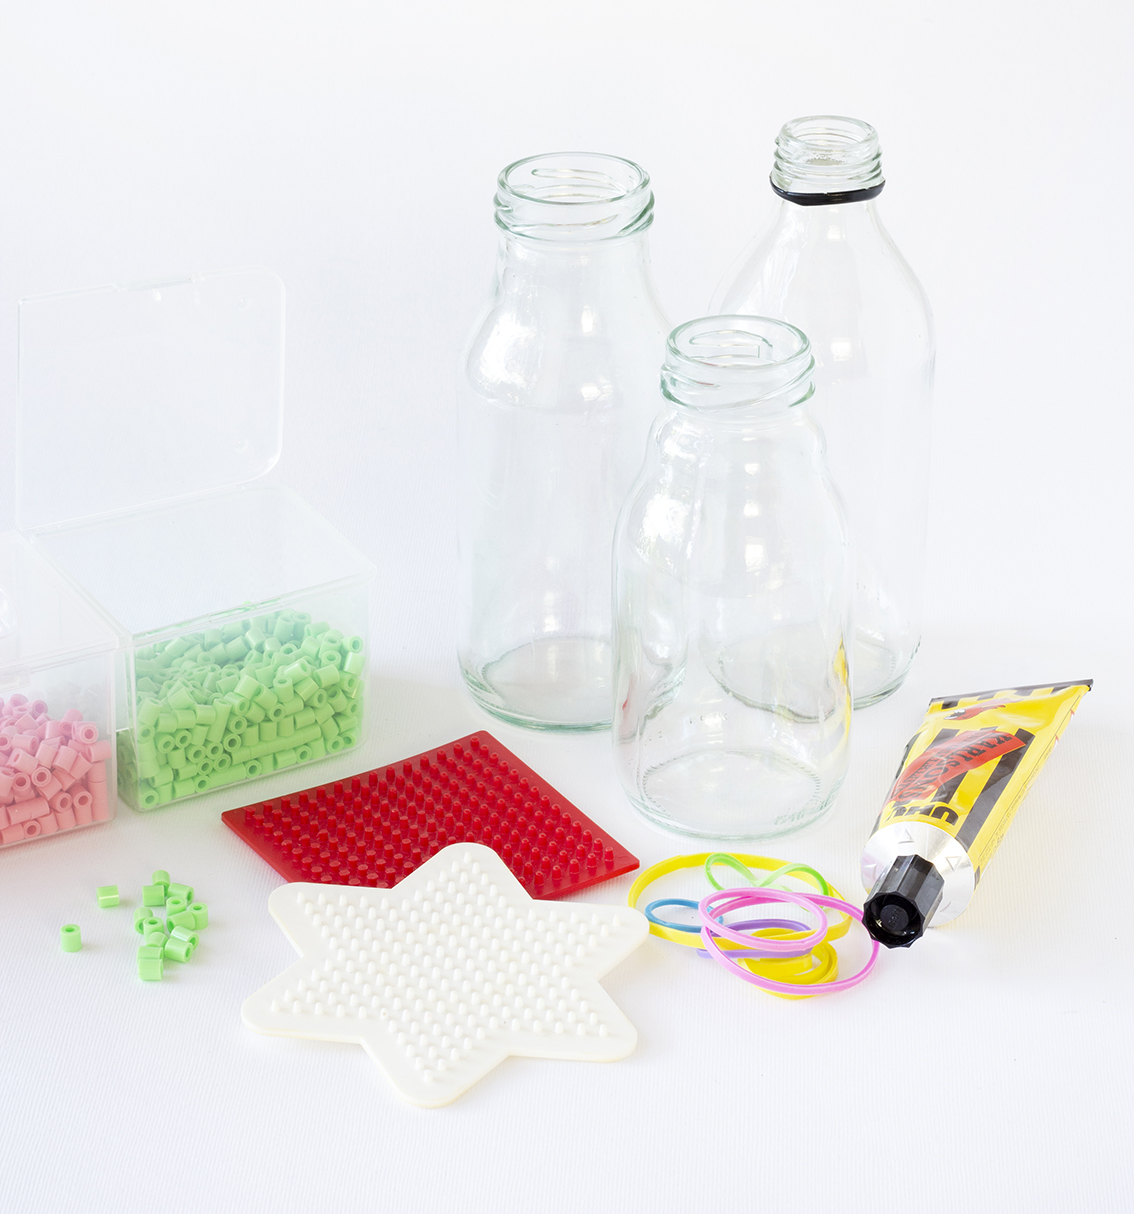 Dekorerade glasflaskor material | Pysselbolaget